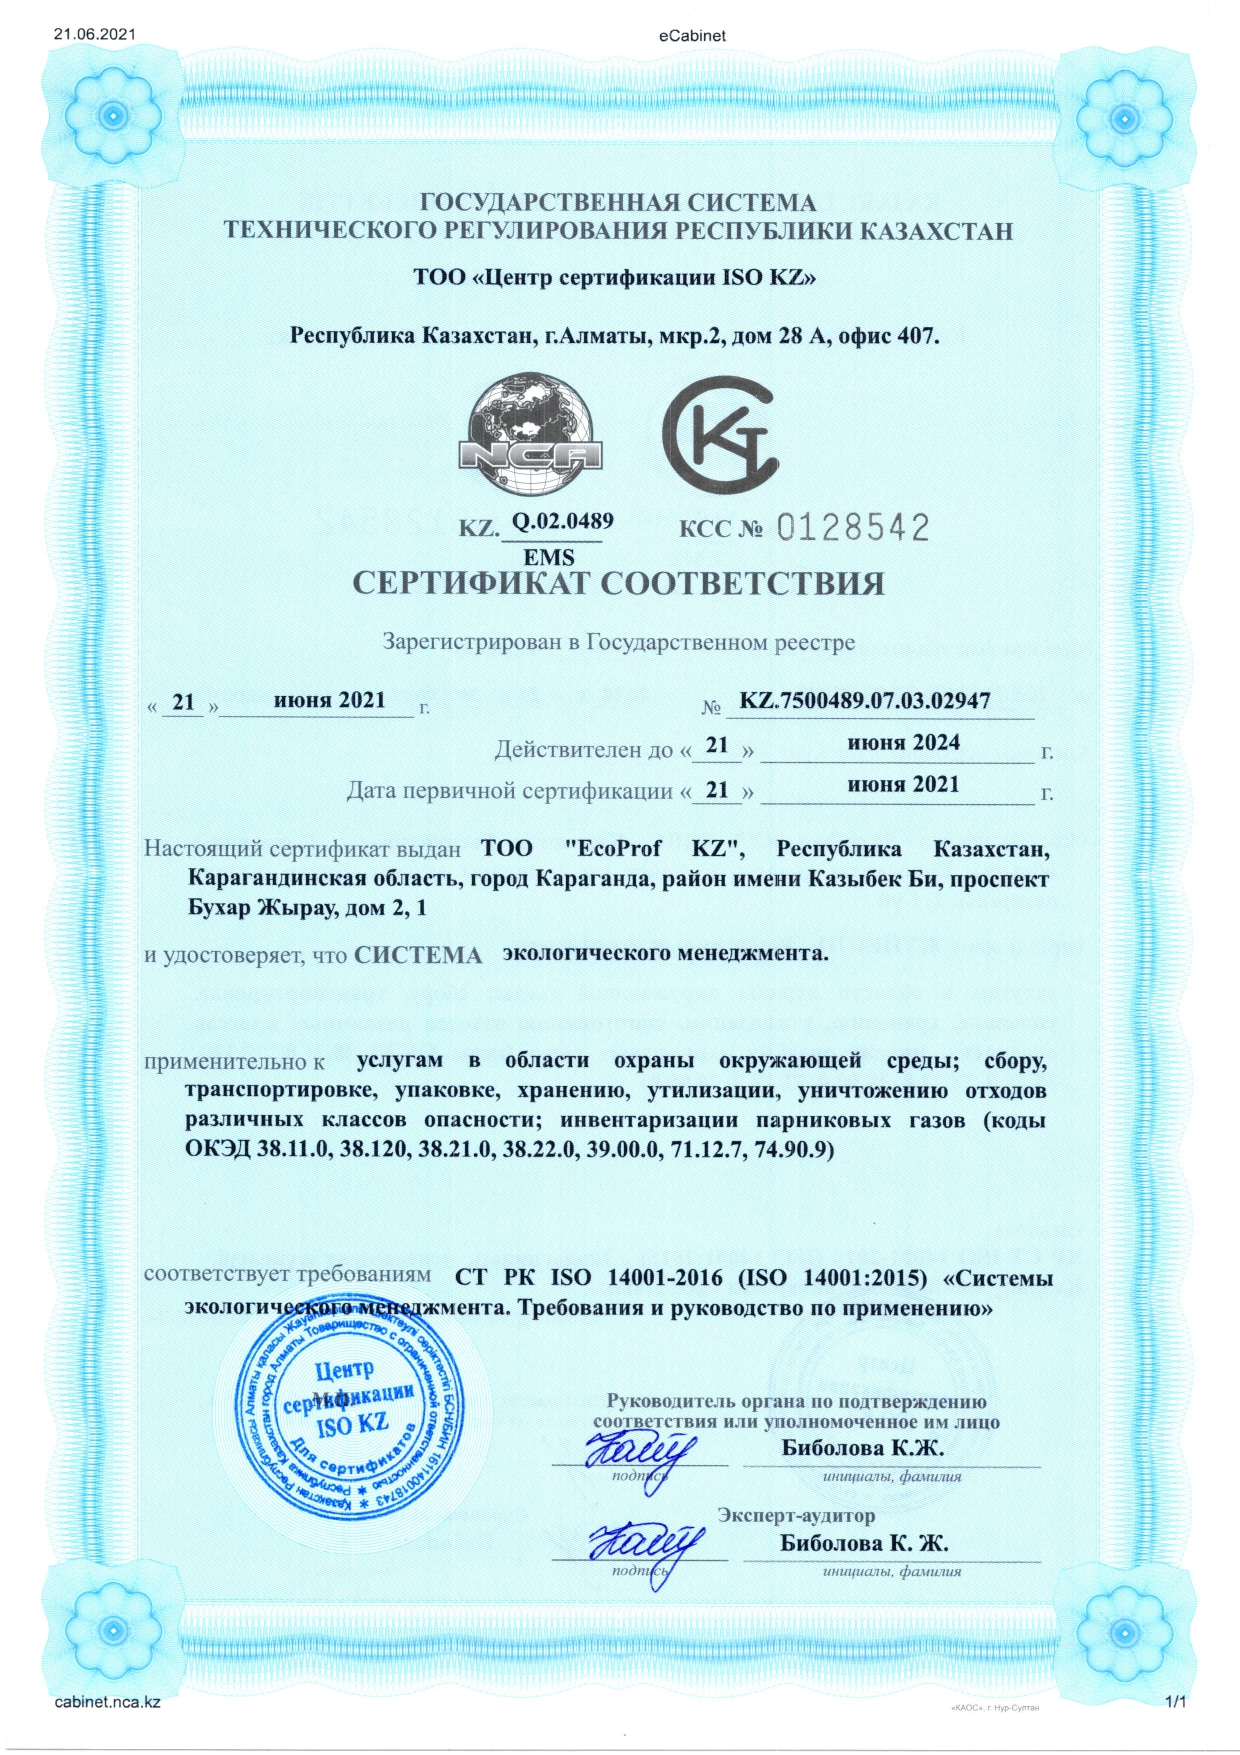 Сертификат соответствия СТ РК ISO 14001-2016 «Системы экологического менеджмента. Требования и руководство по применению»